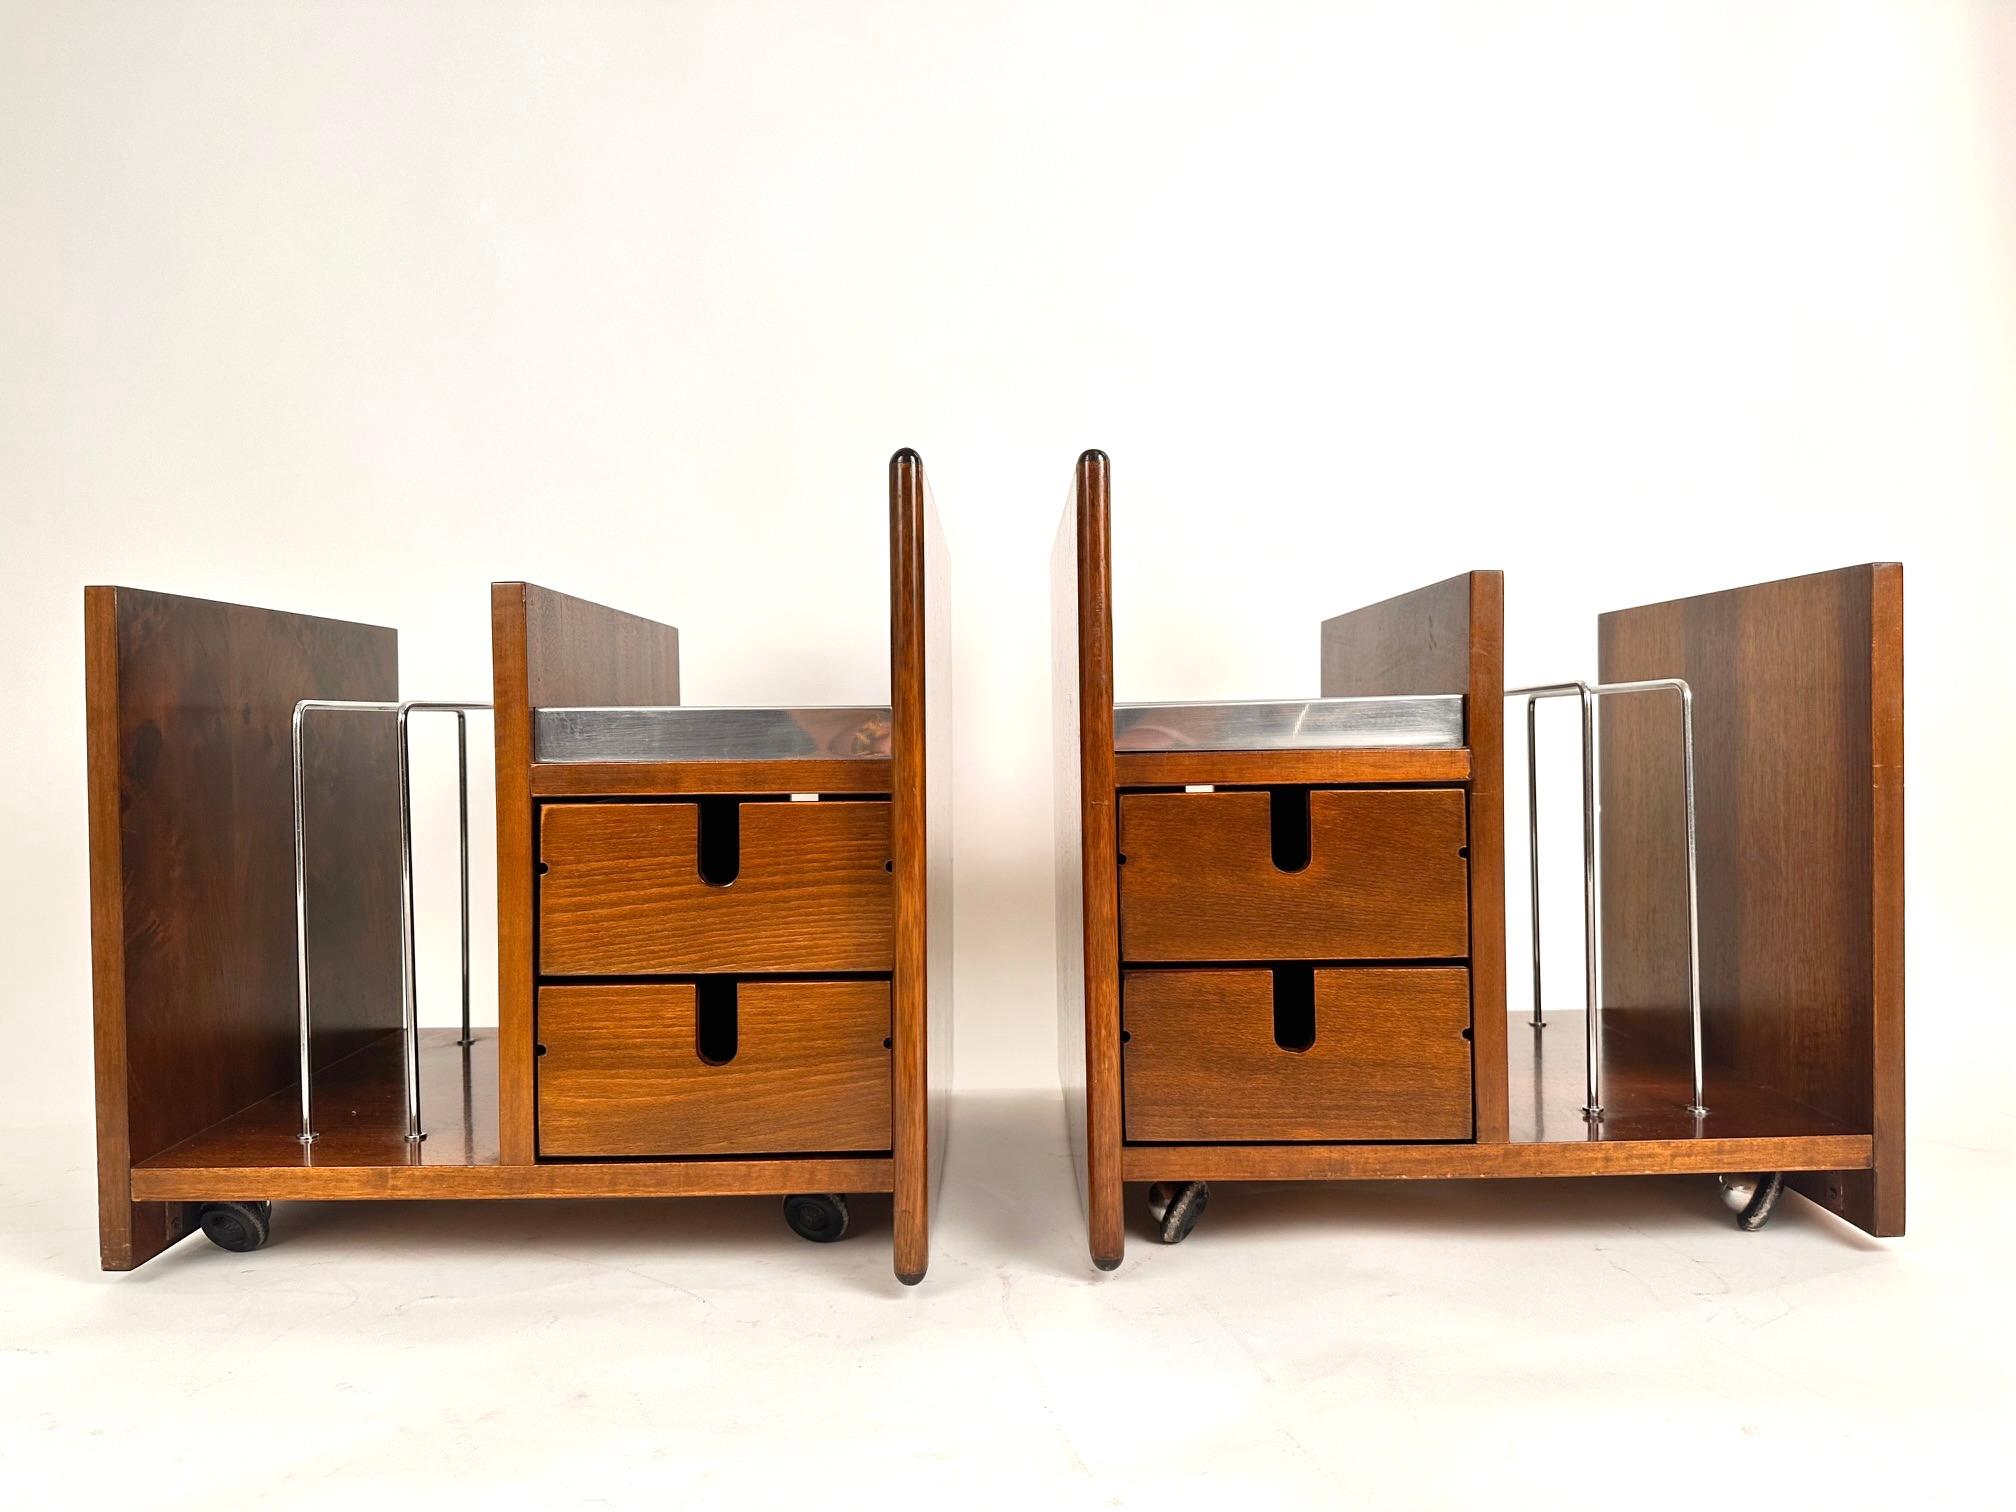 Ein sehr seltenes Paar Beistelltische/Zeitschriftenständer, entworfen von Ettore Sottsass in den 70er Jahren.Zwei Boxen mit einem Zeitschriftenständer.Teak und Stahl.Ausgezeichneter Zustand.
Kostenlose, professionelle Verpackung.